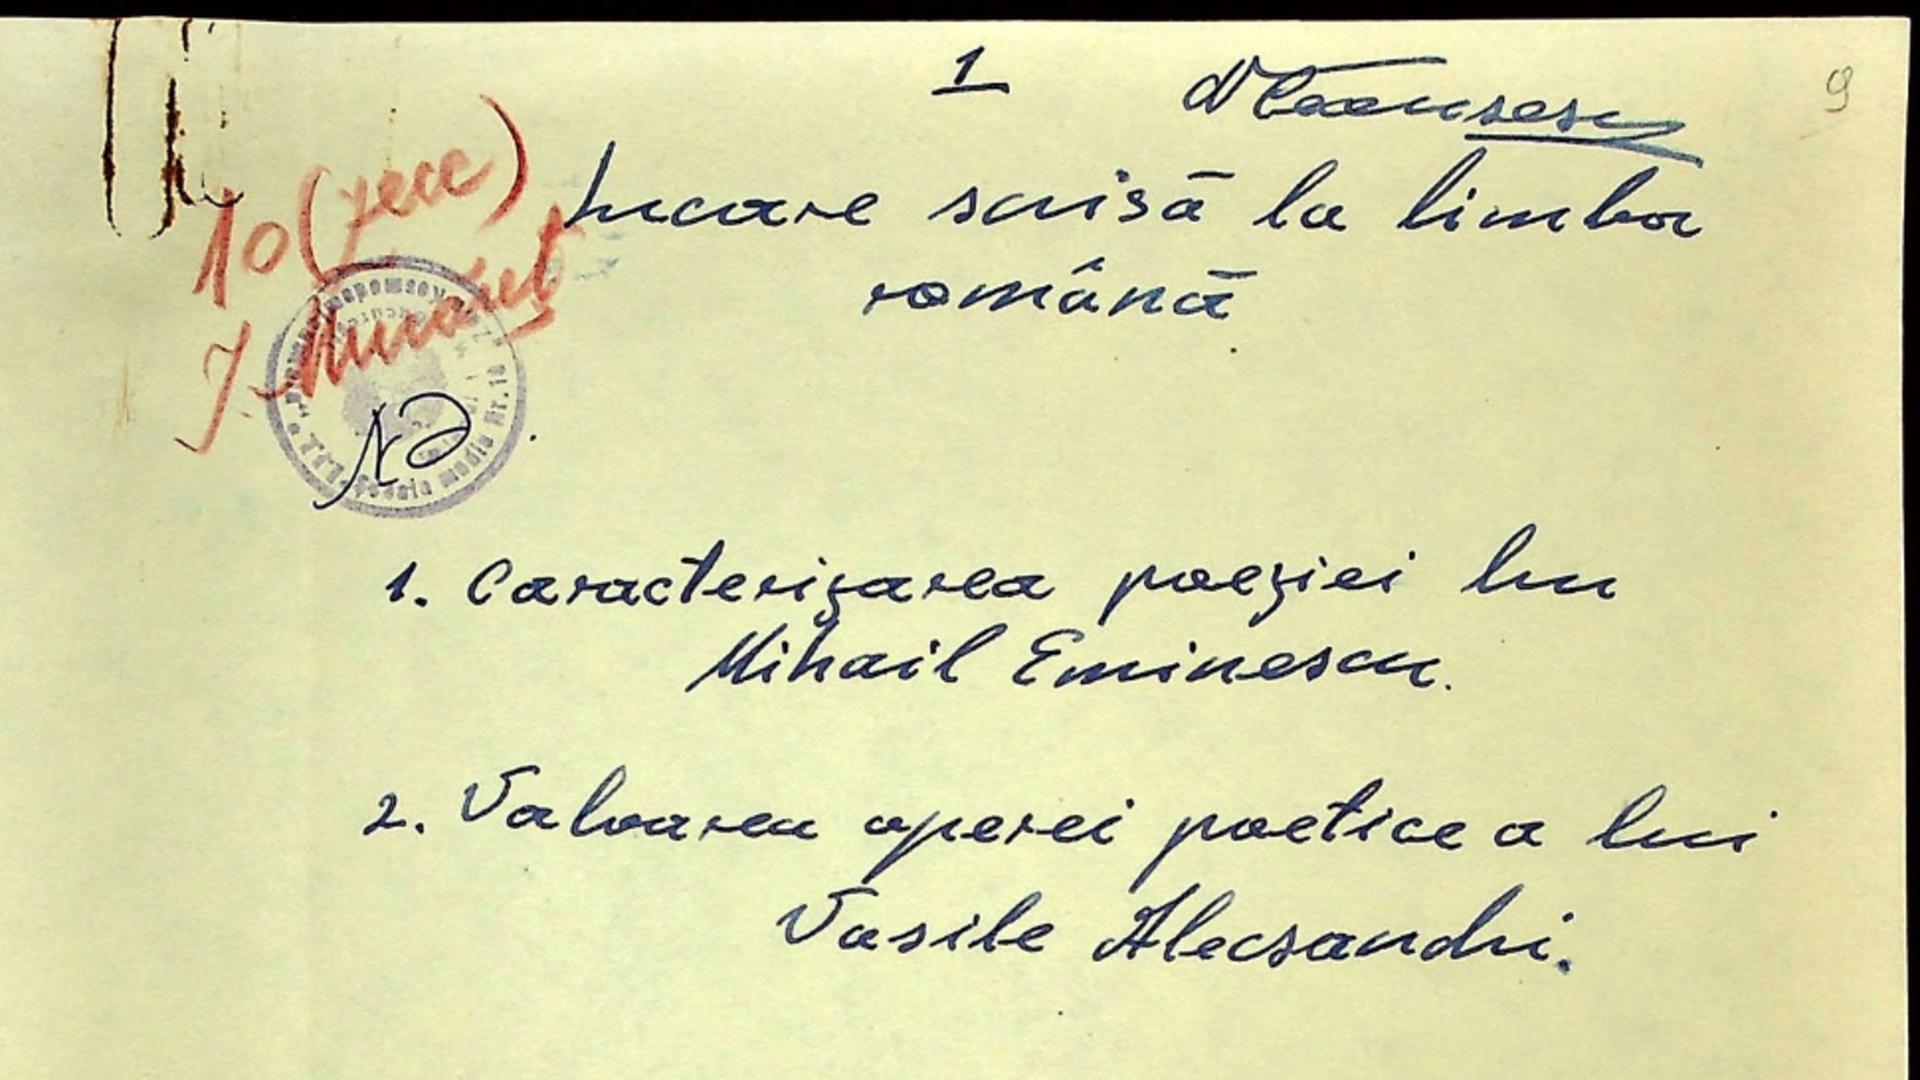 Documente privitoare la școlarizarea lui Nicolae Ceaușescu/ Facebook ANR